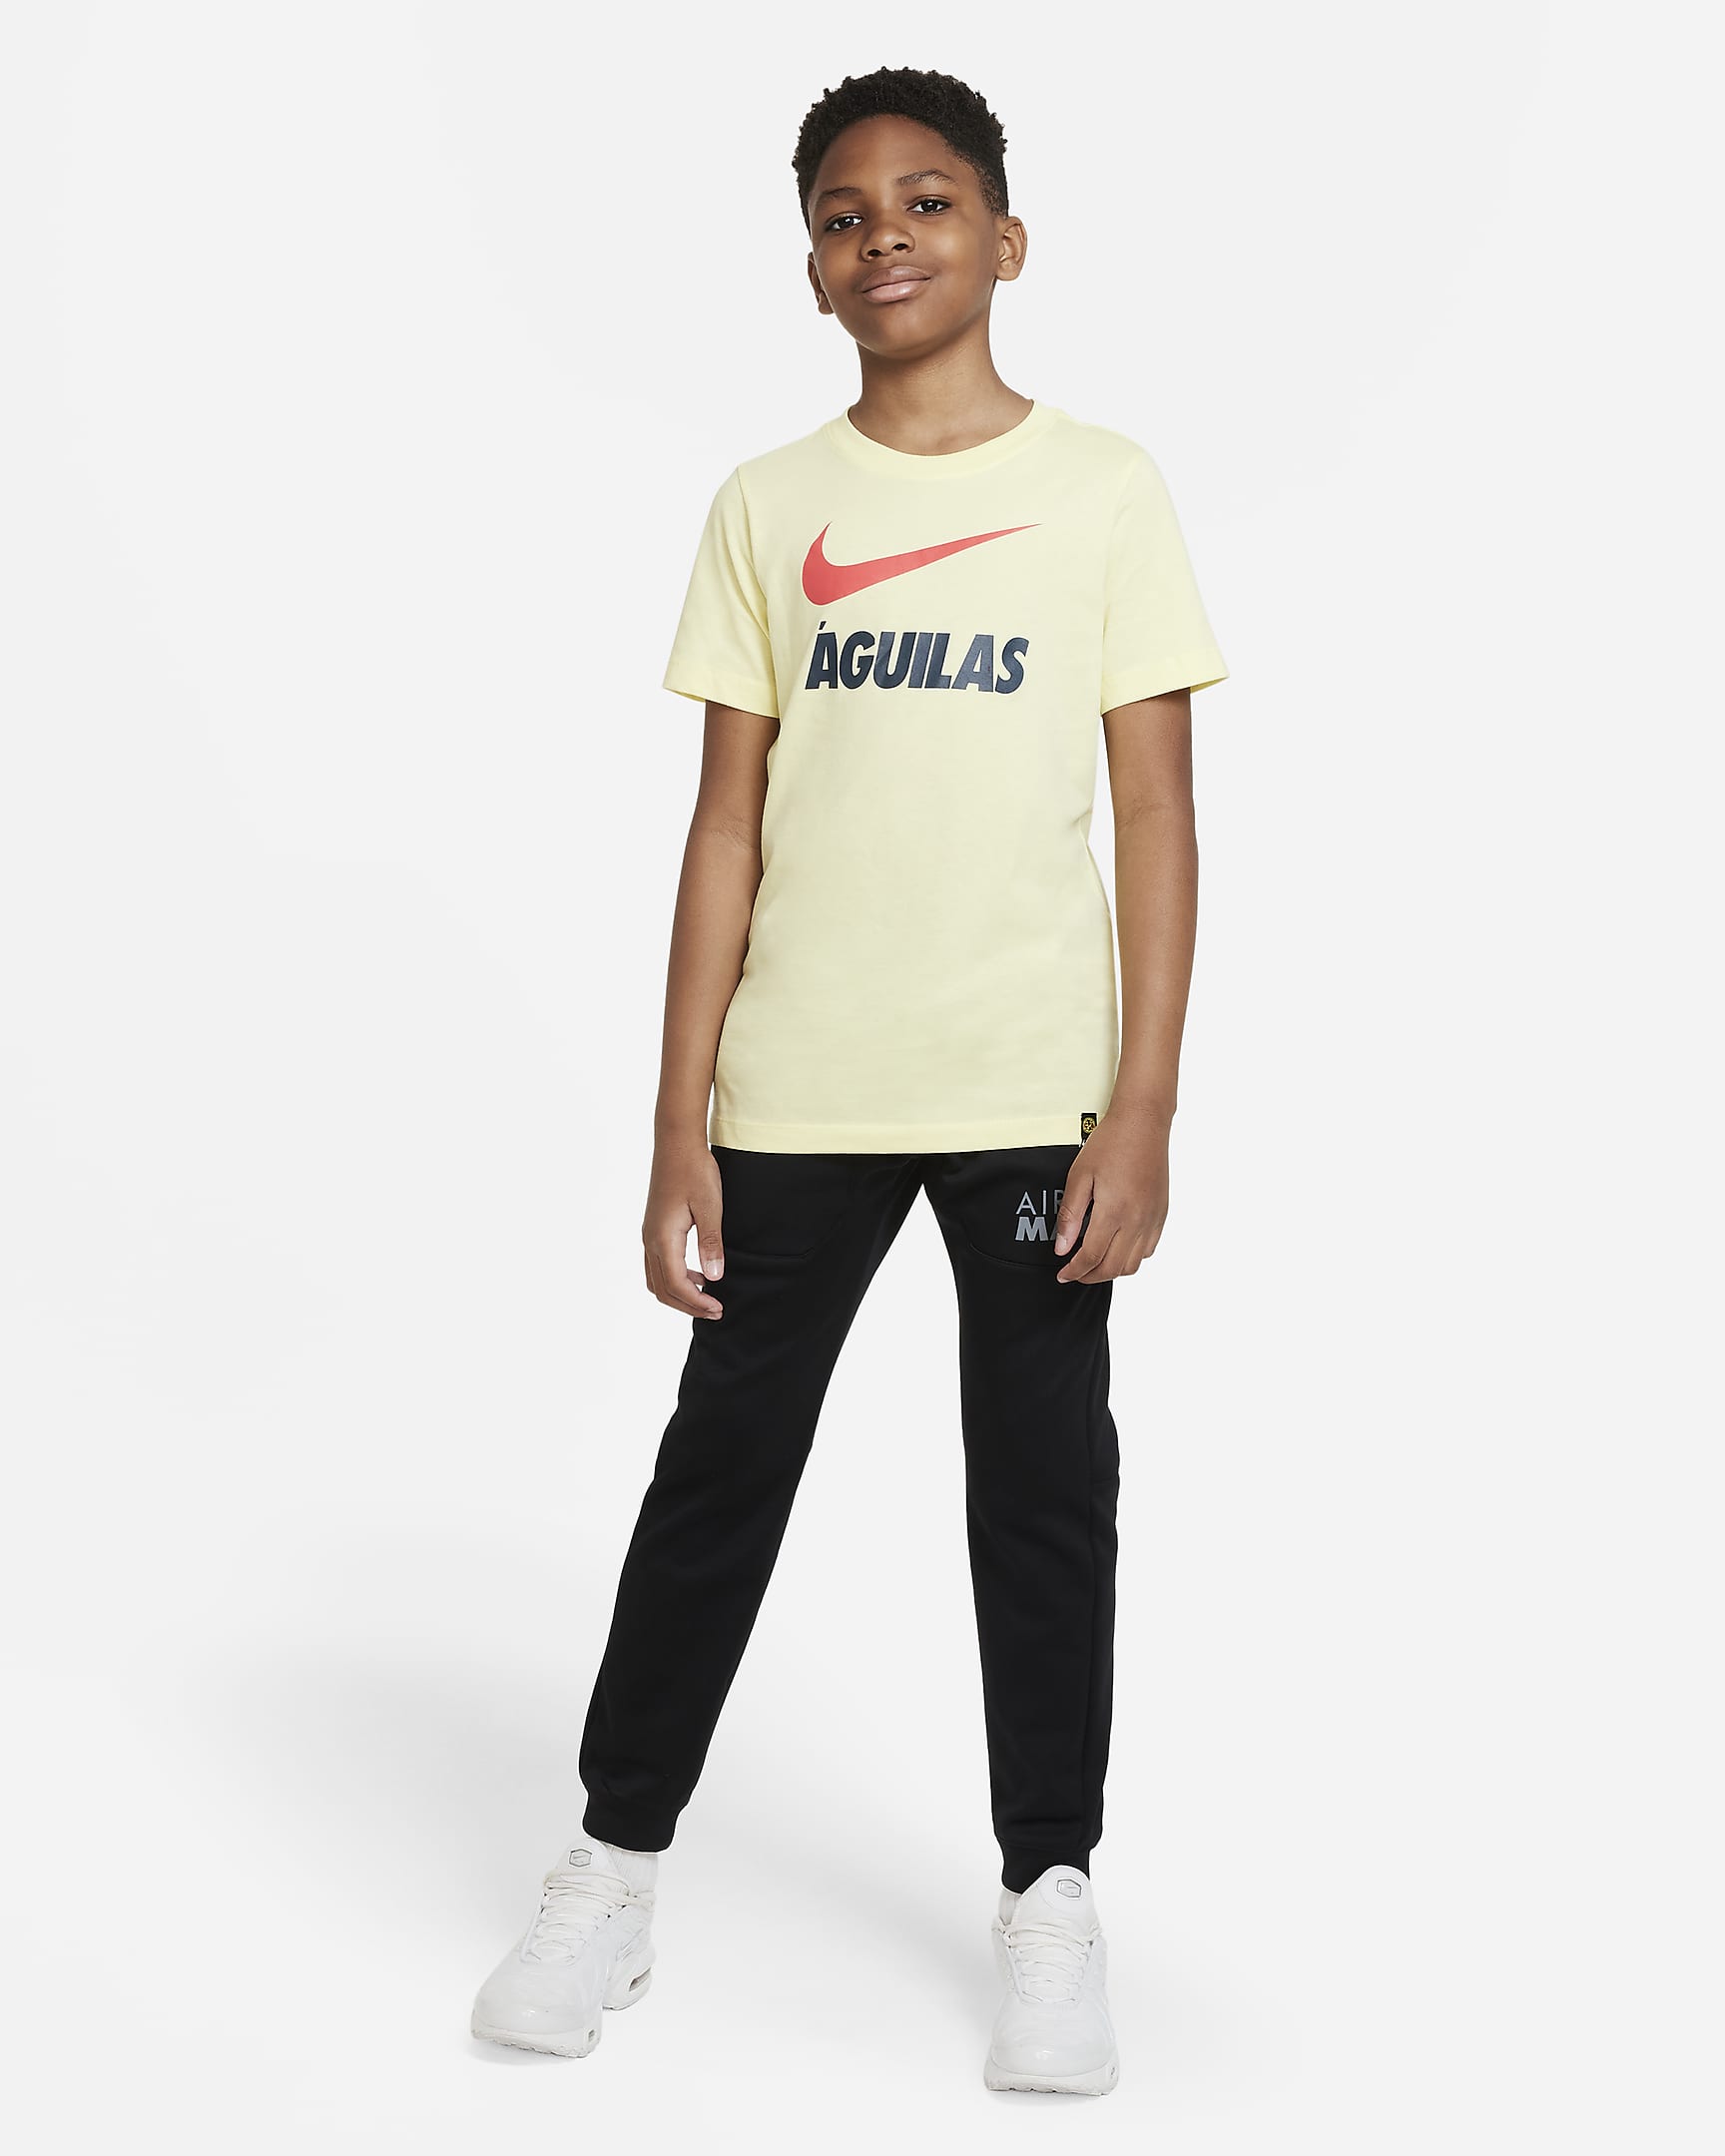 Club América Big Kids' T-Shirt. Nike.com